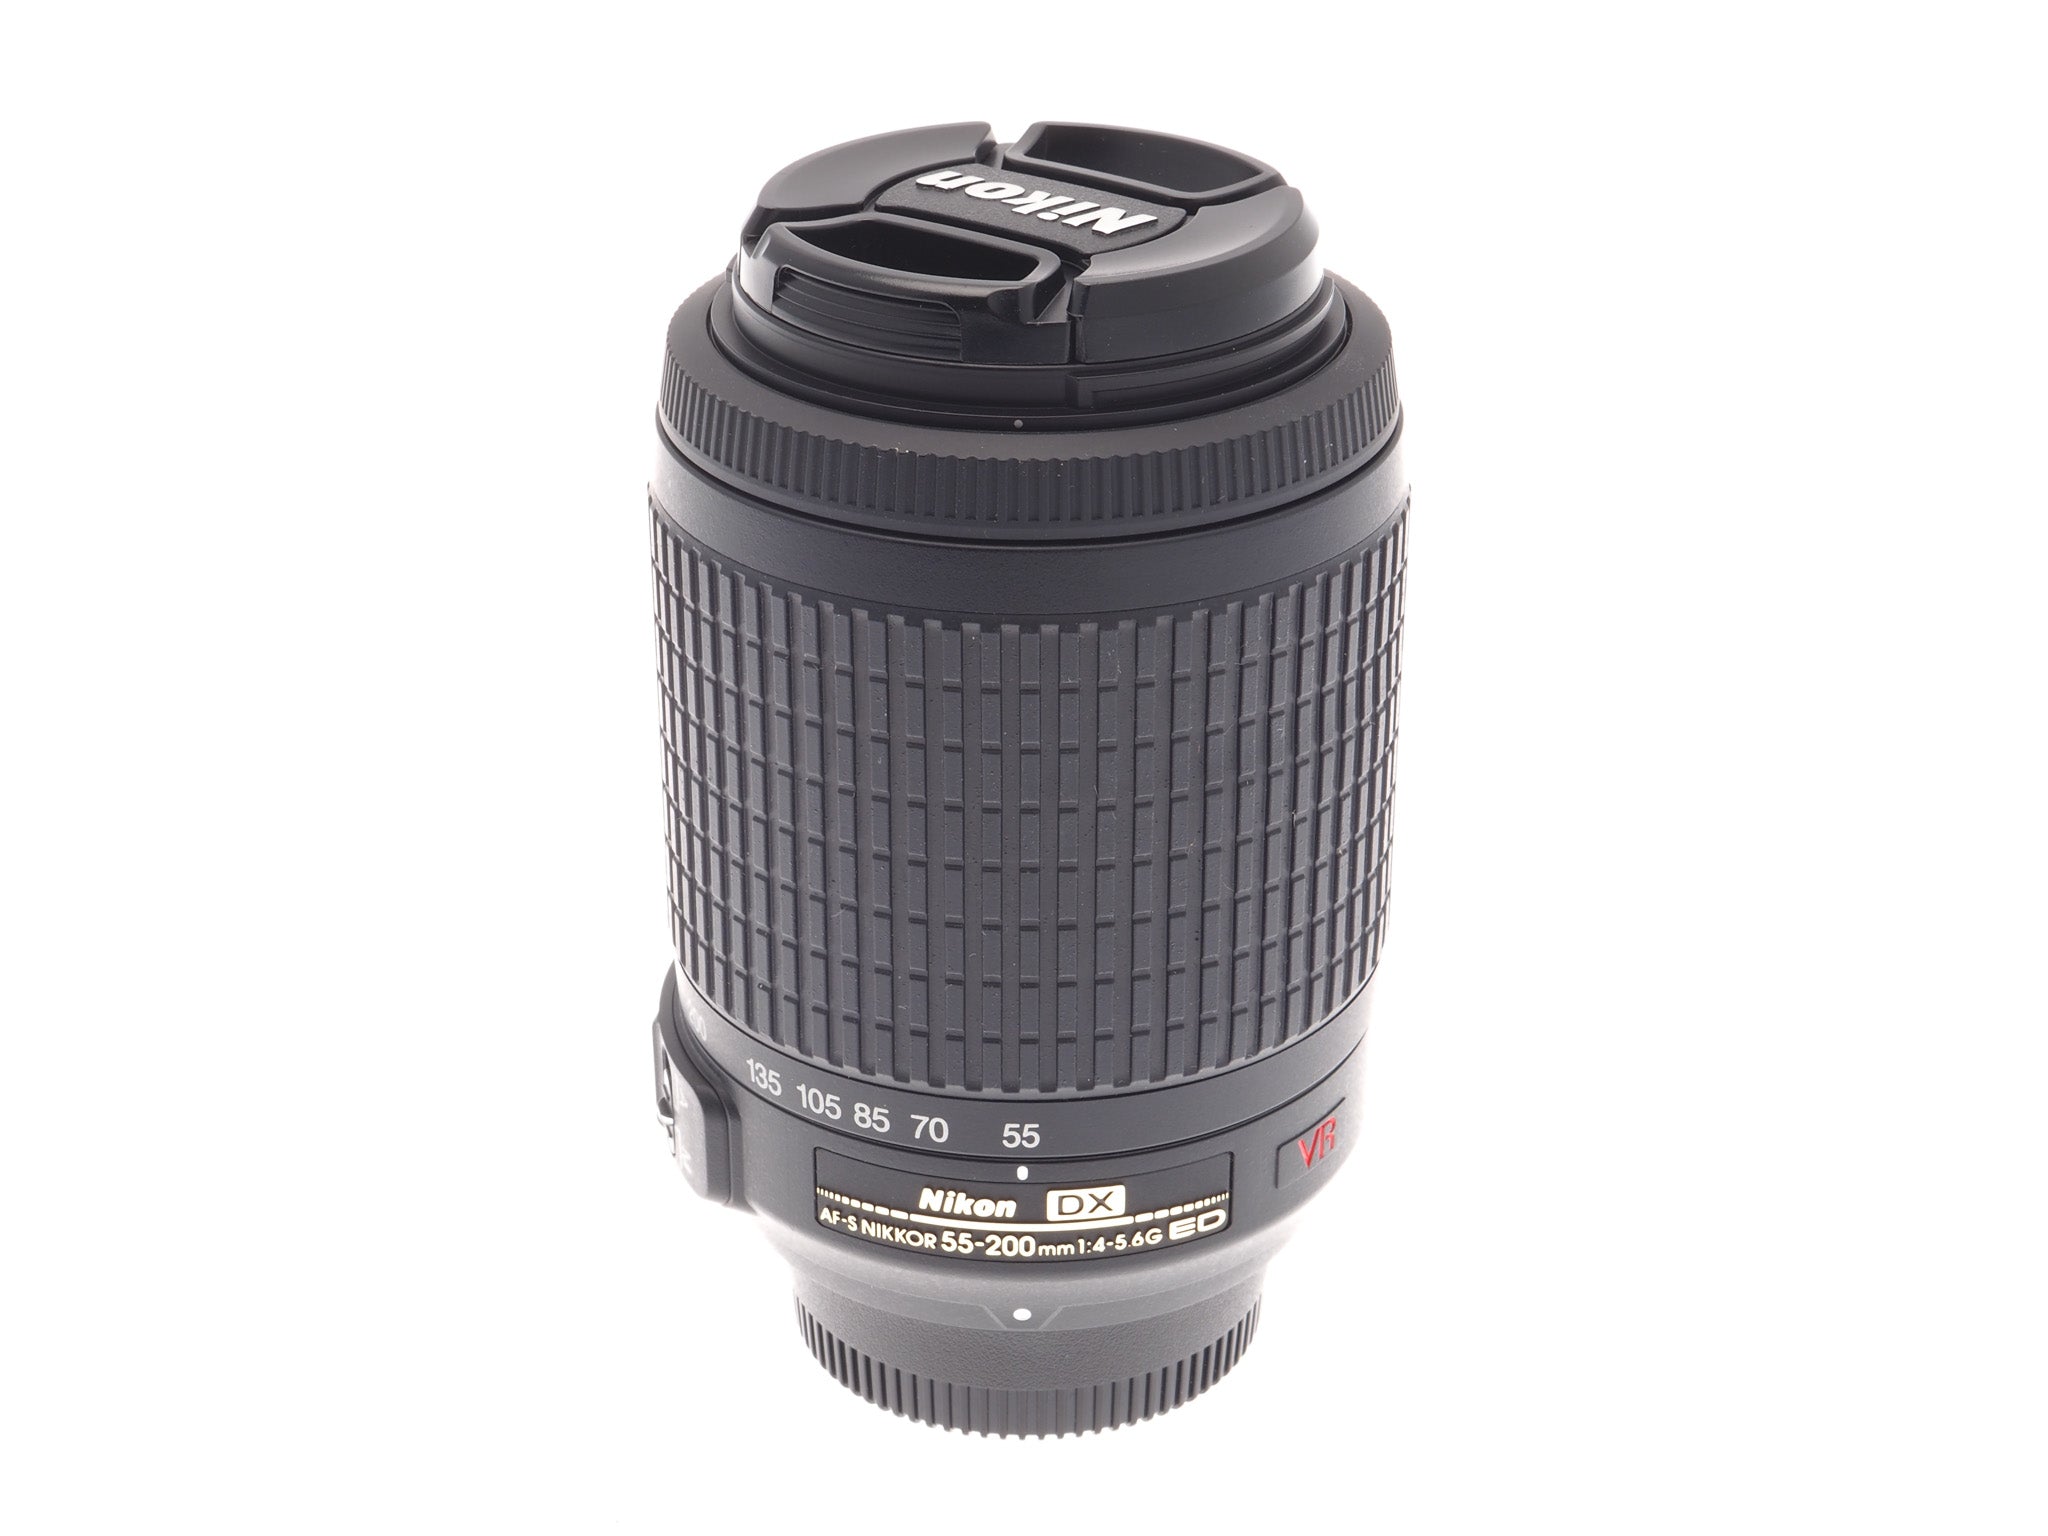 Nikon 55-200mm f4-5.6 G ED AF-S Nikkor VR - Lens